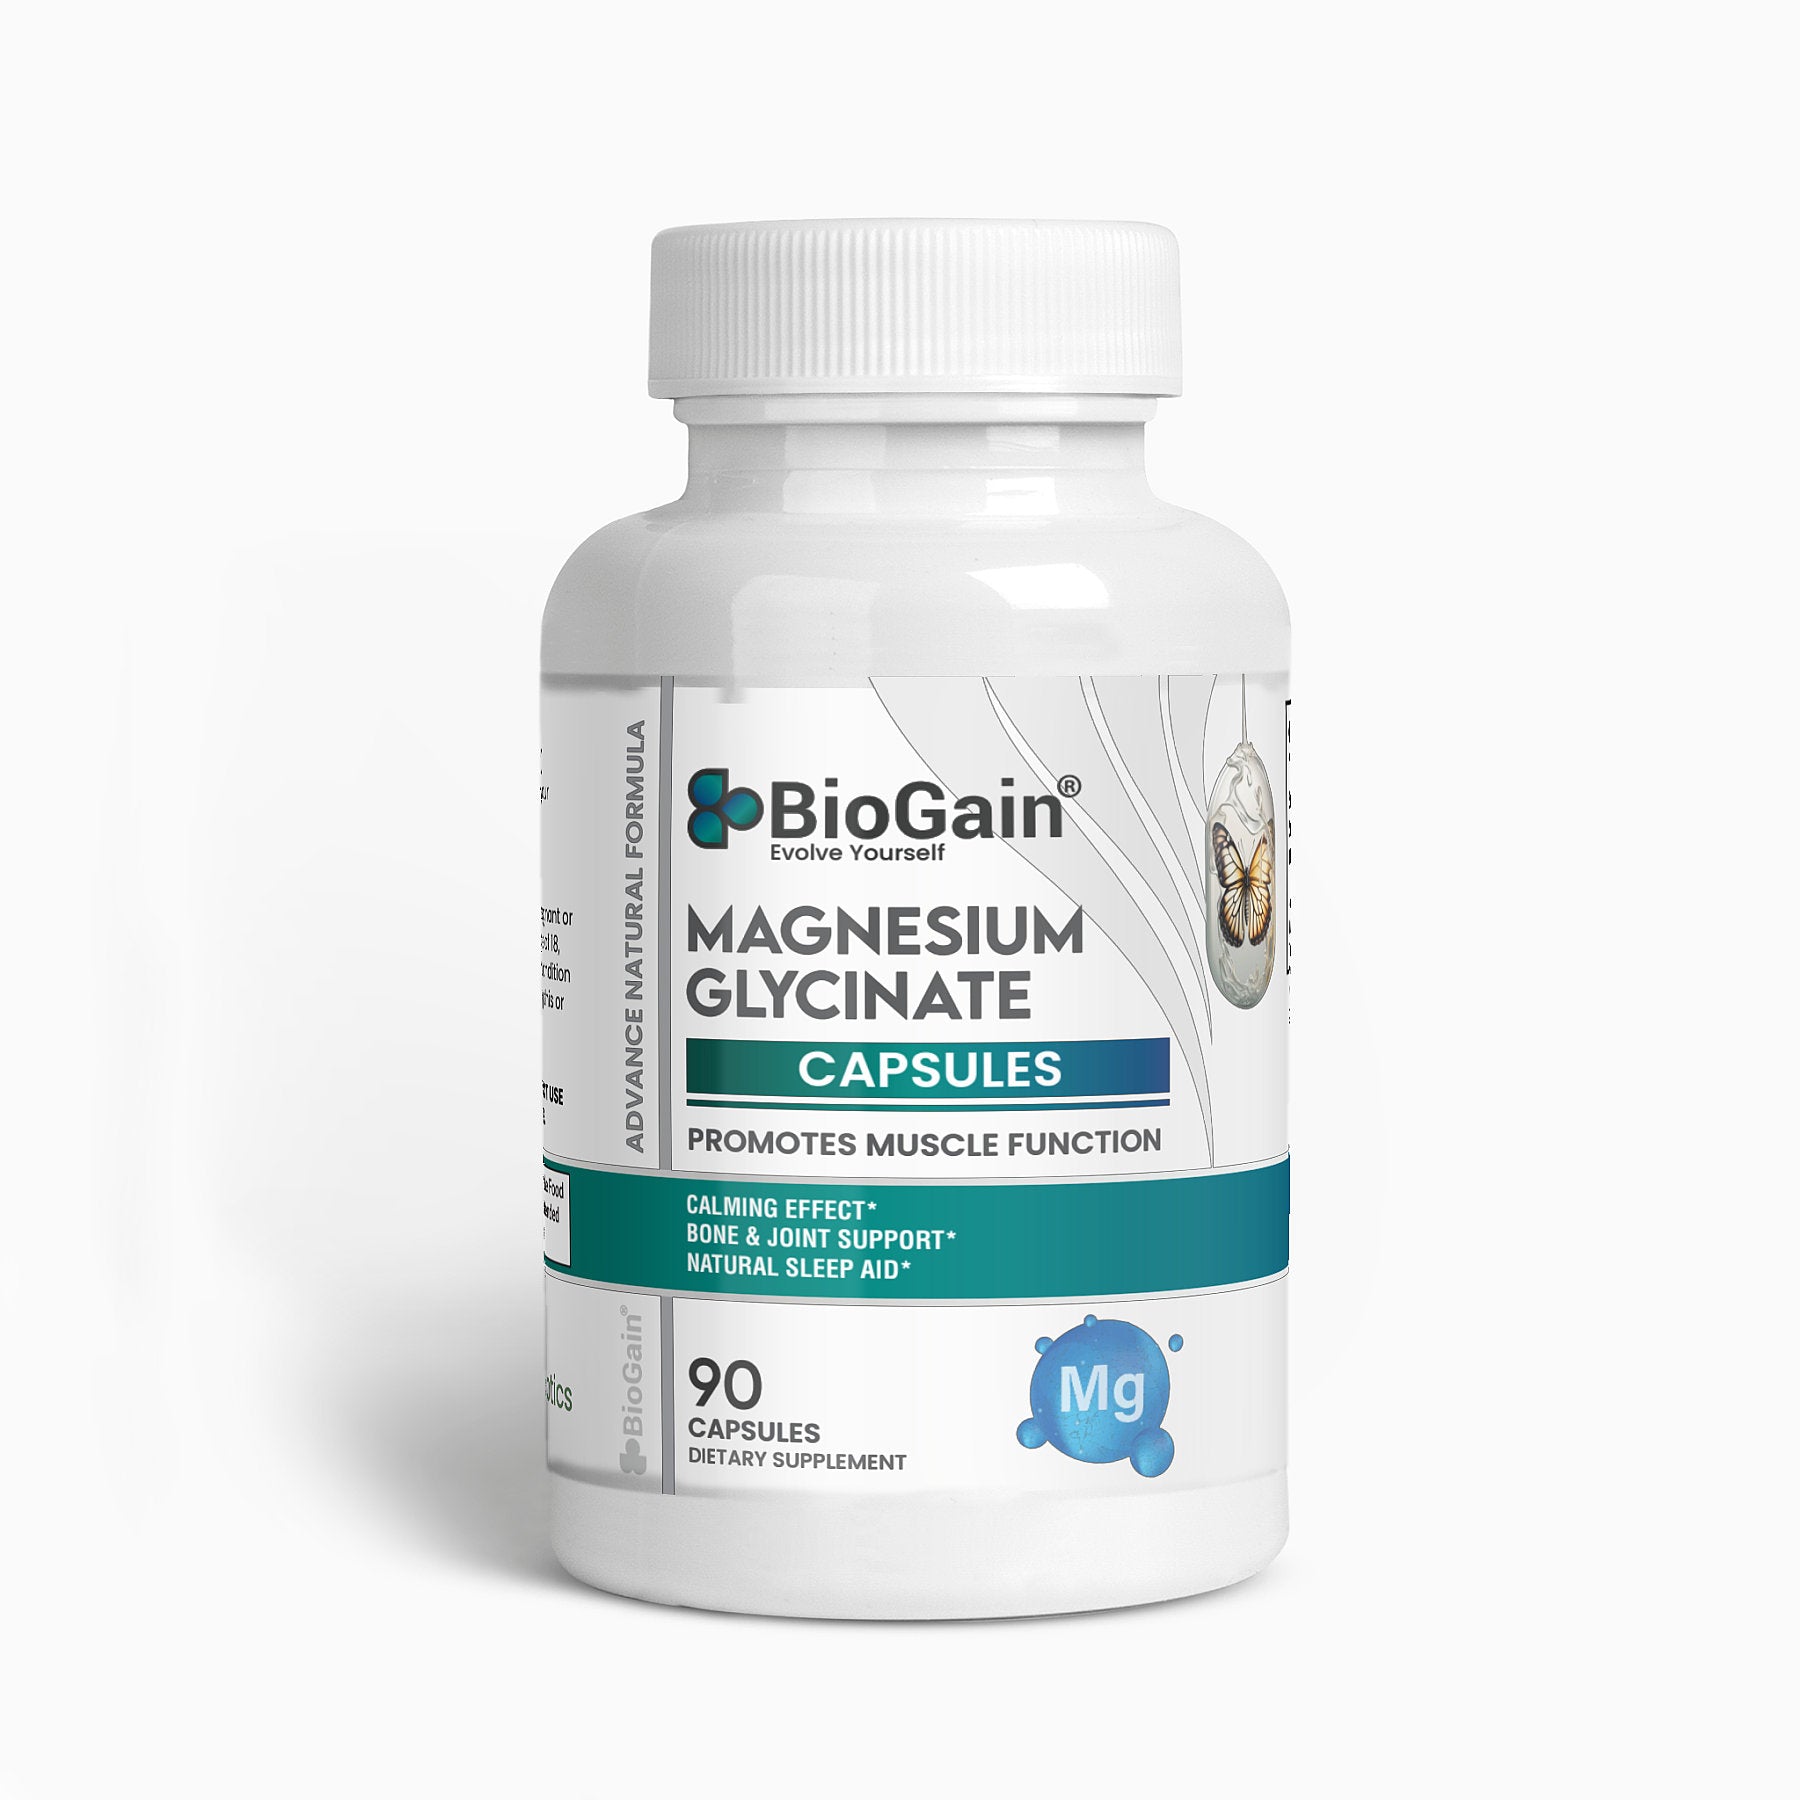 BioGain® TranquilEase Magnesium Glycinate